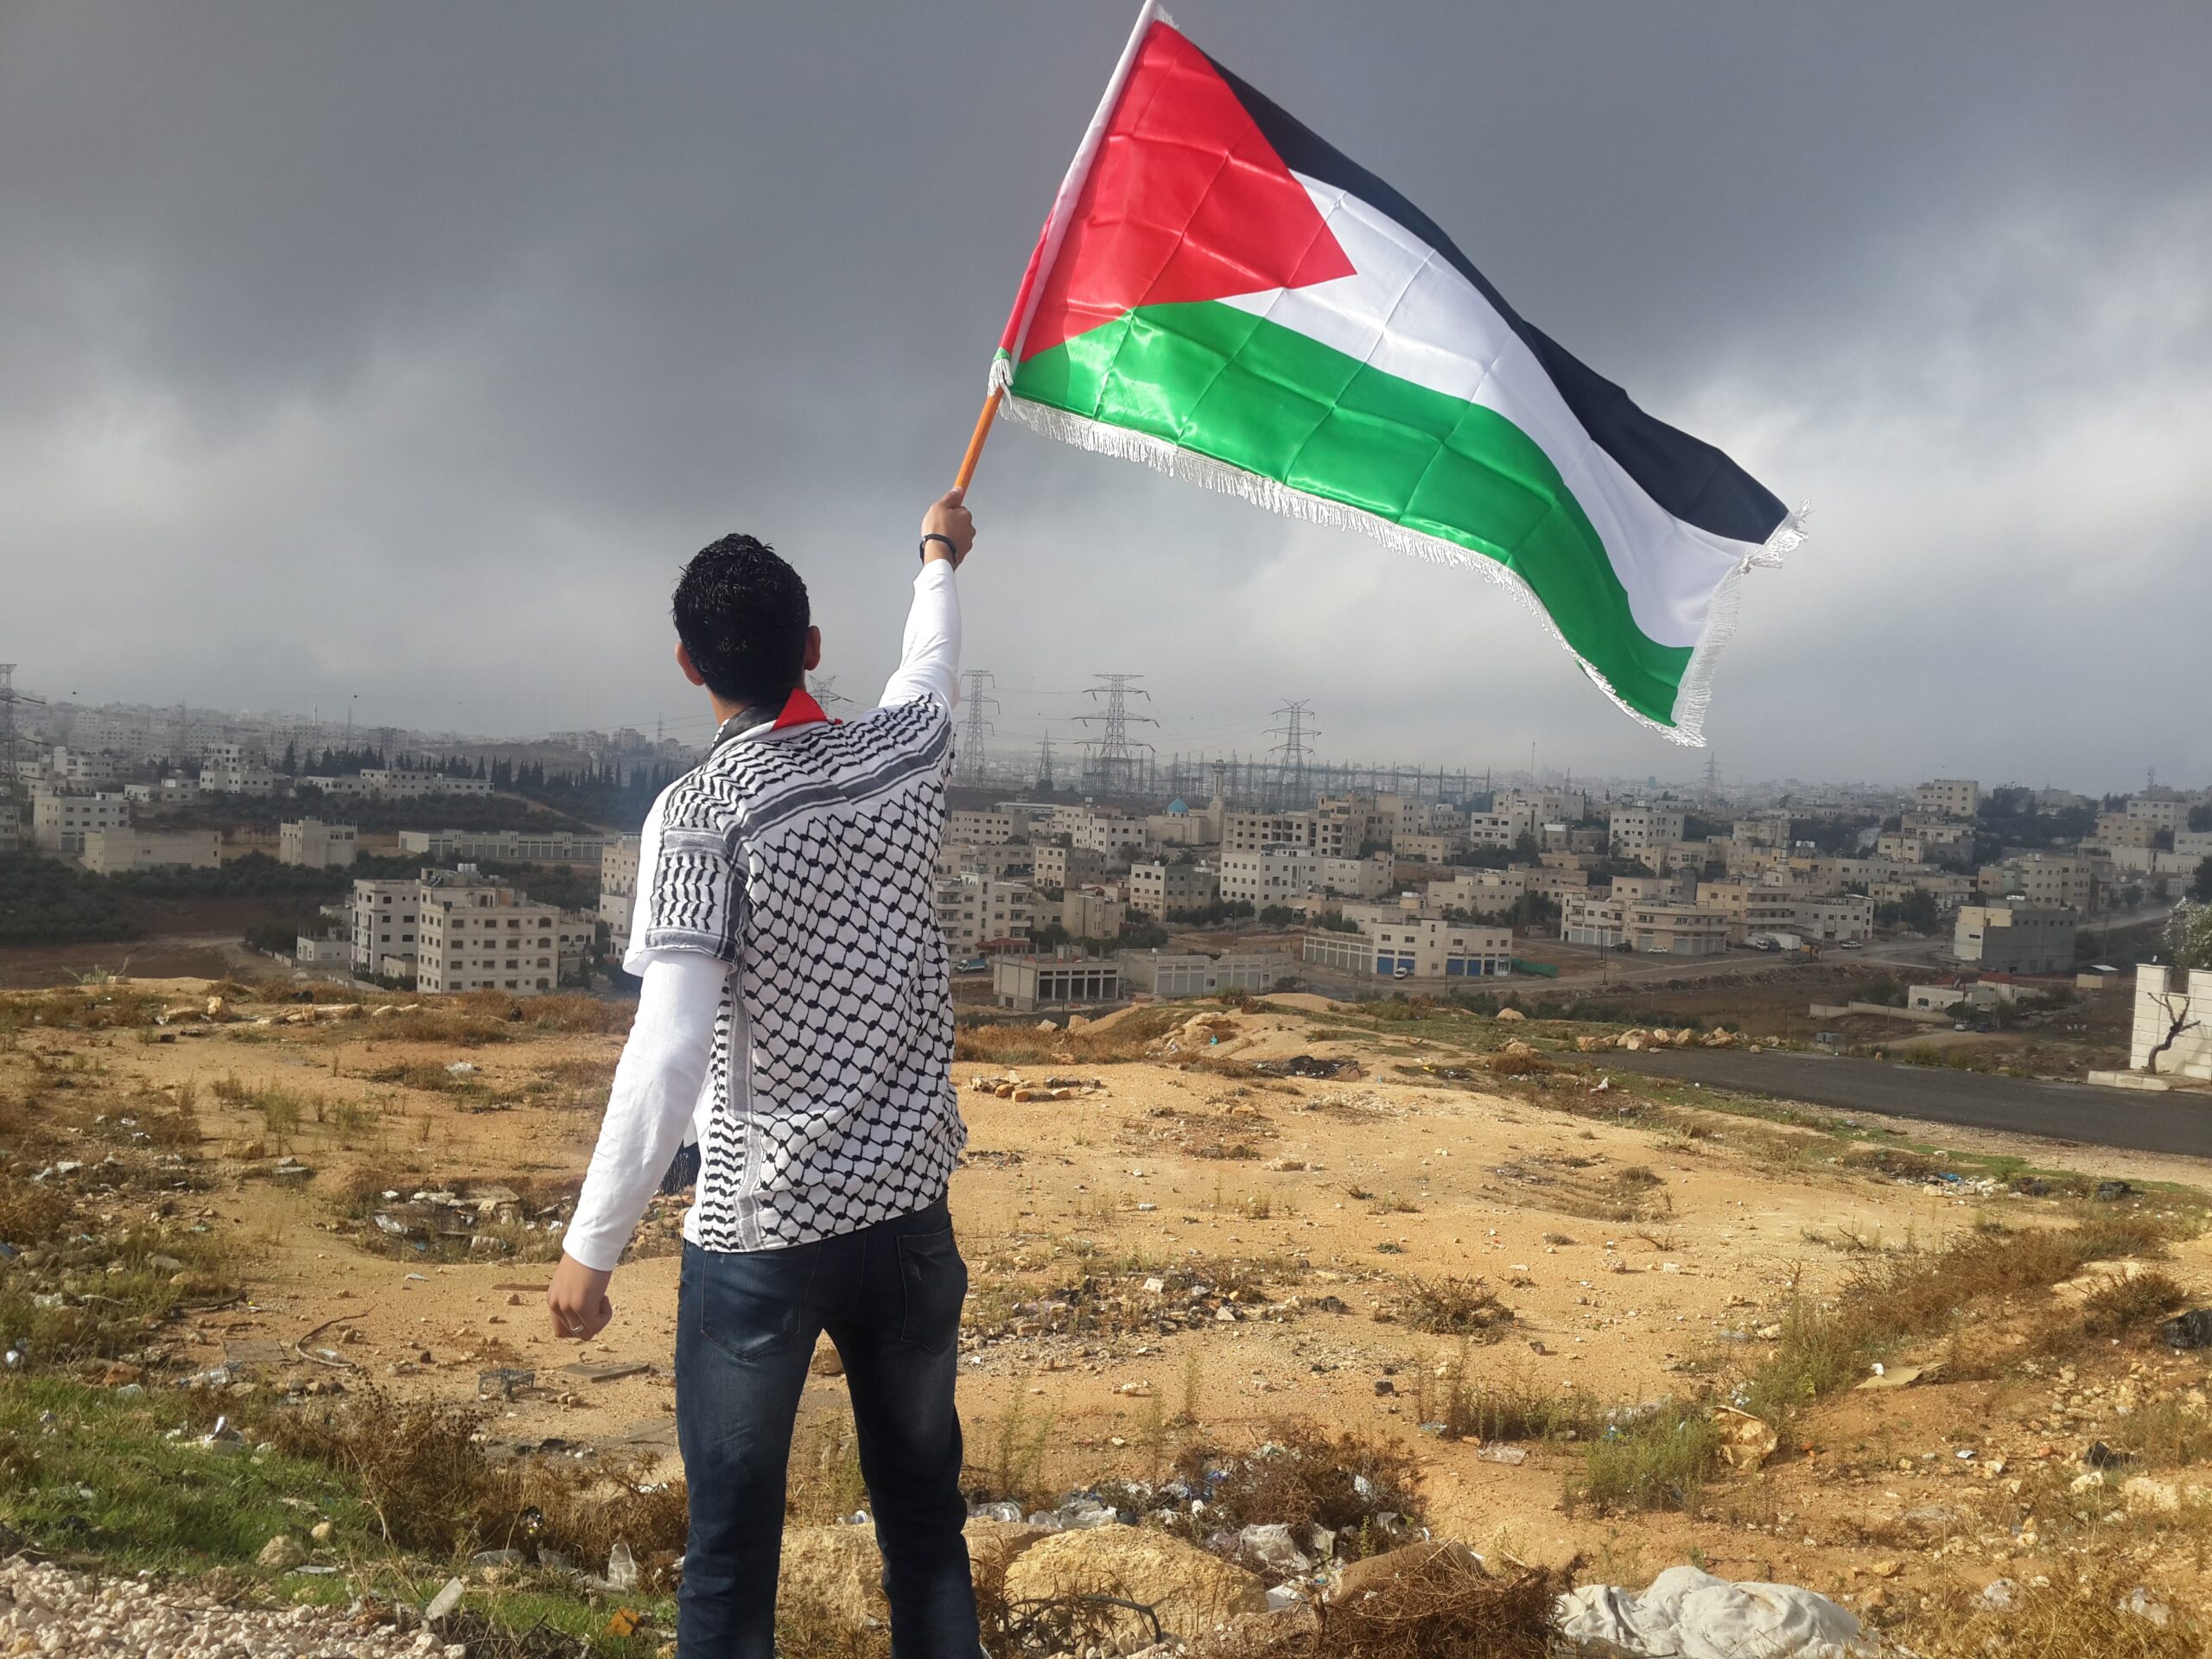 انتقادات لأكاديميين في جامعات بريطانية للتعبير عن دعمهم لفلسطين